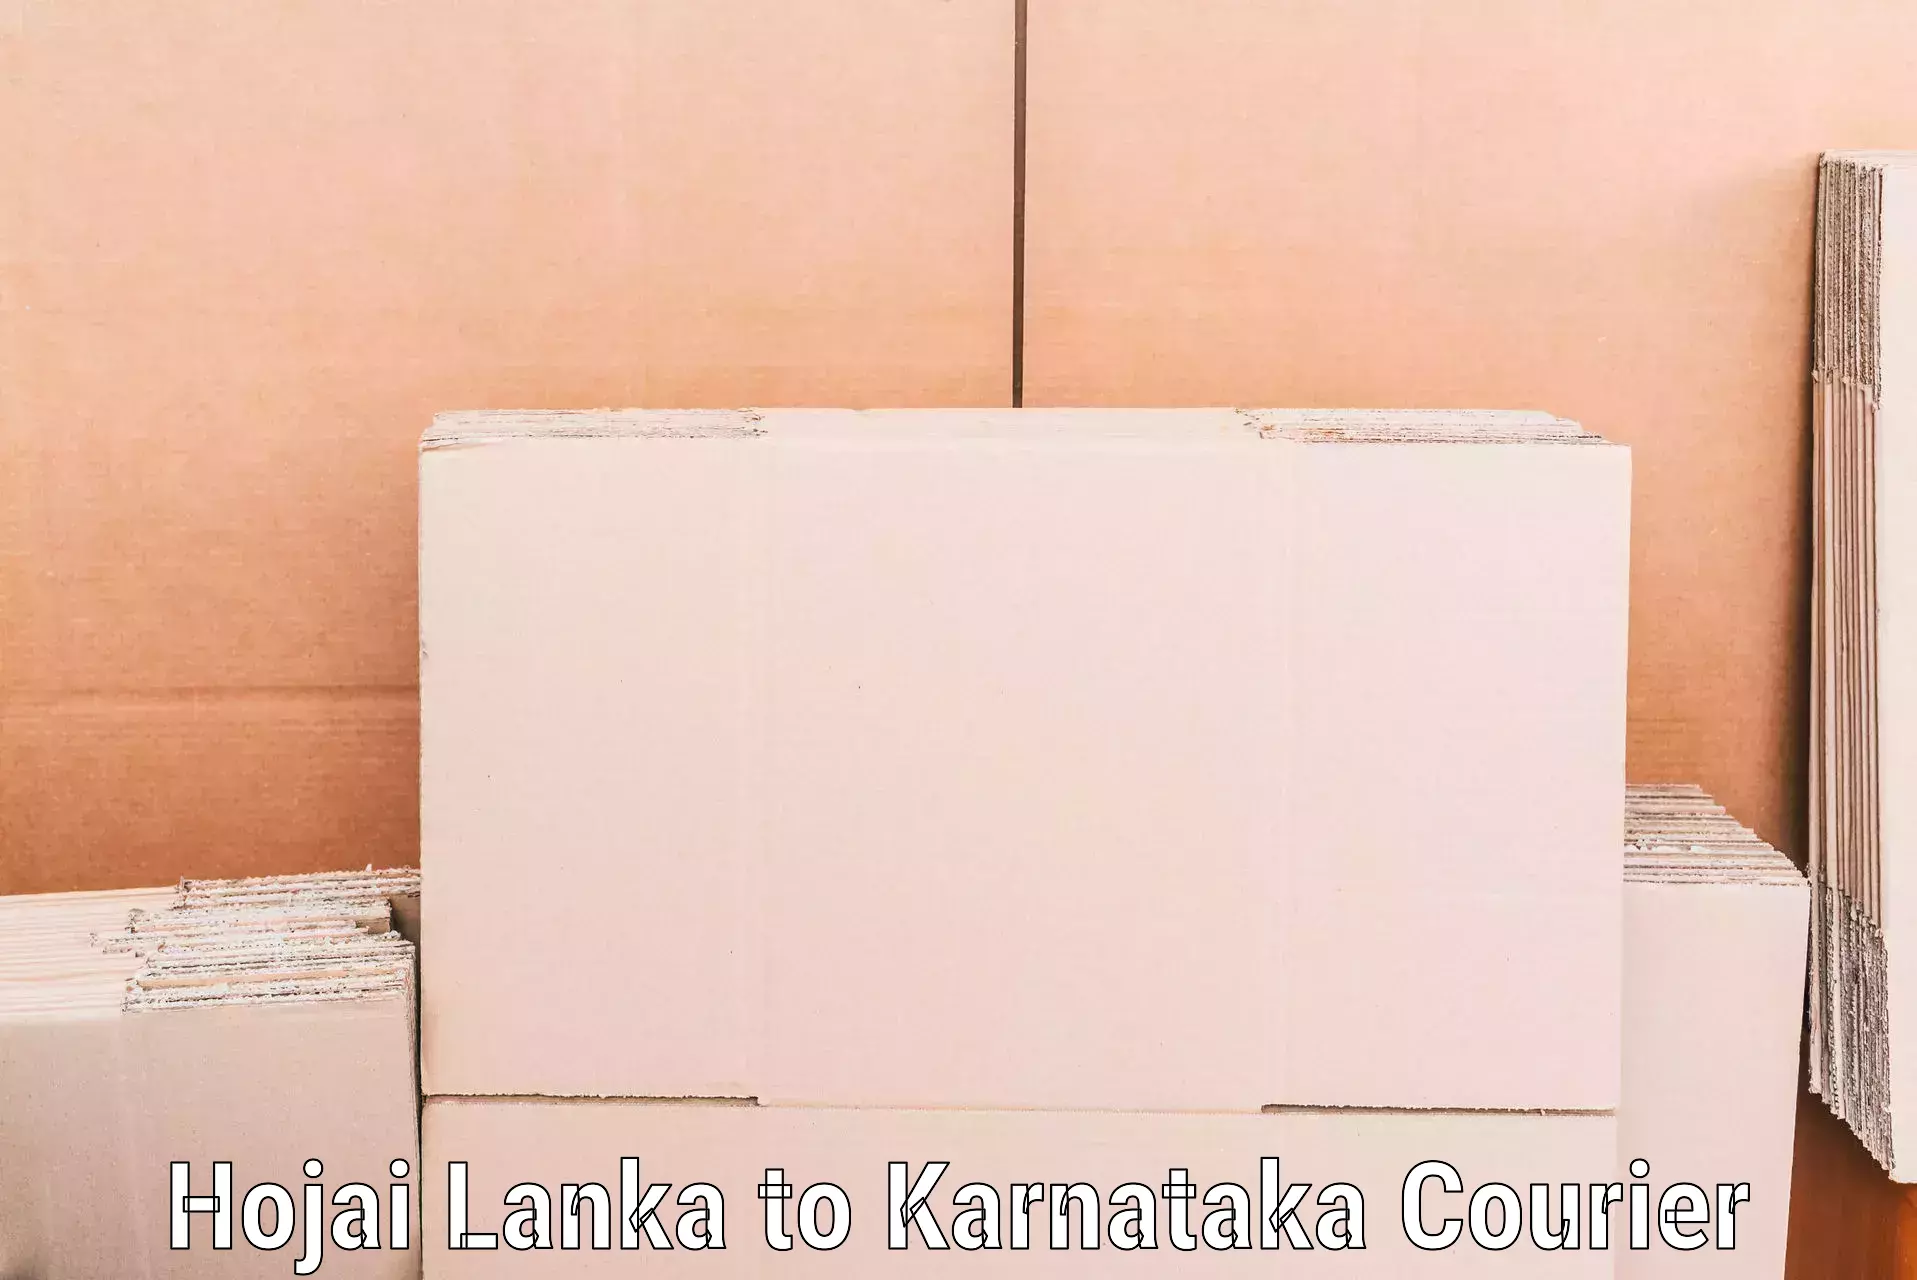 Trusted moving company in Hojai Lanka to Kulshekar